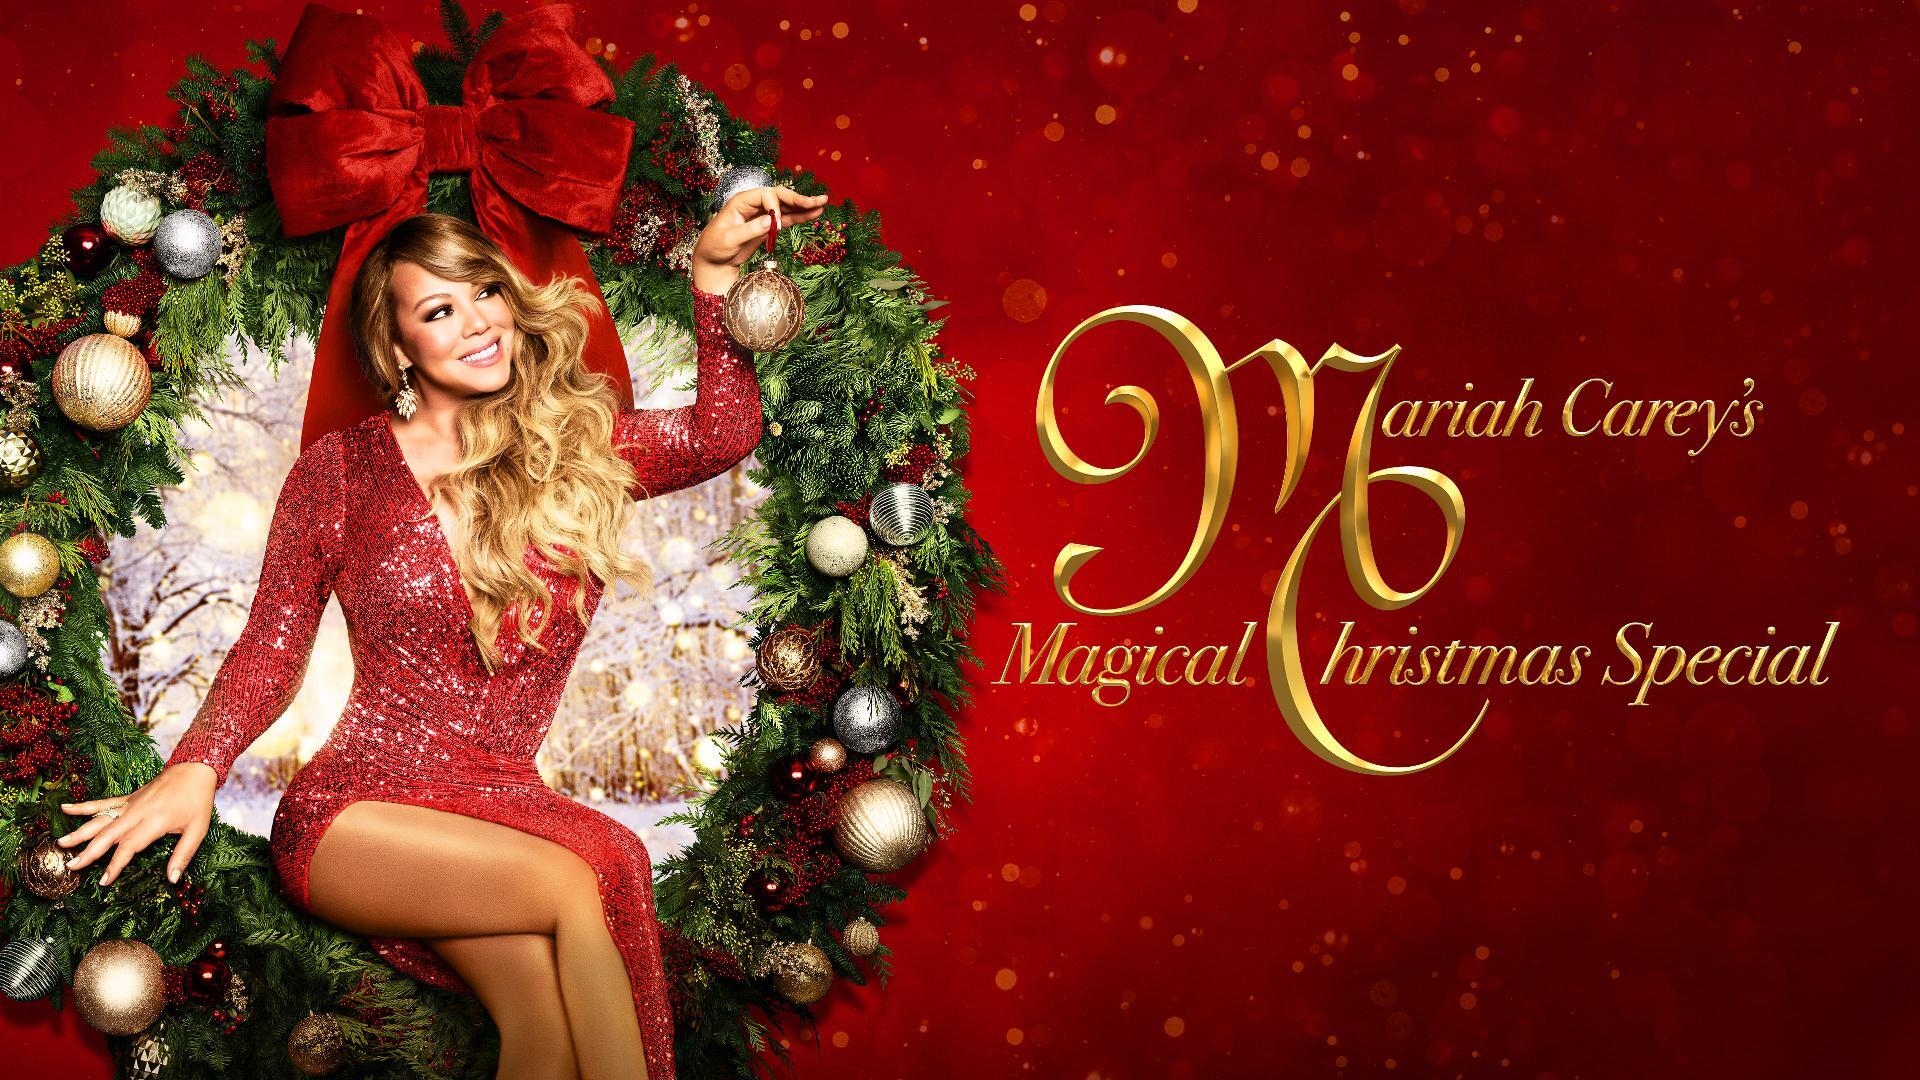 მერაია კერი ჯადოსნური შობისთვის / Mariah Carey's Magical Christmas Special